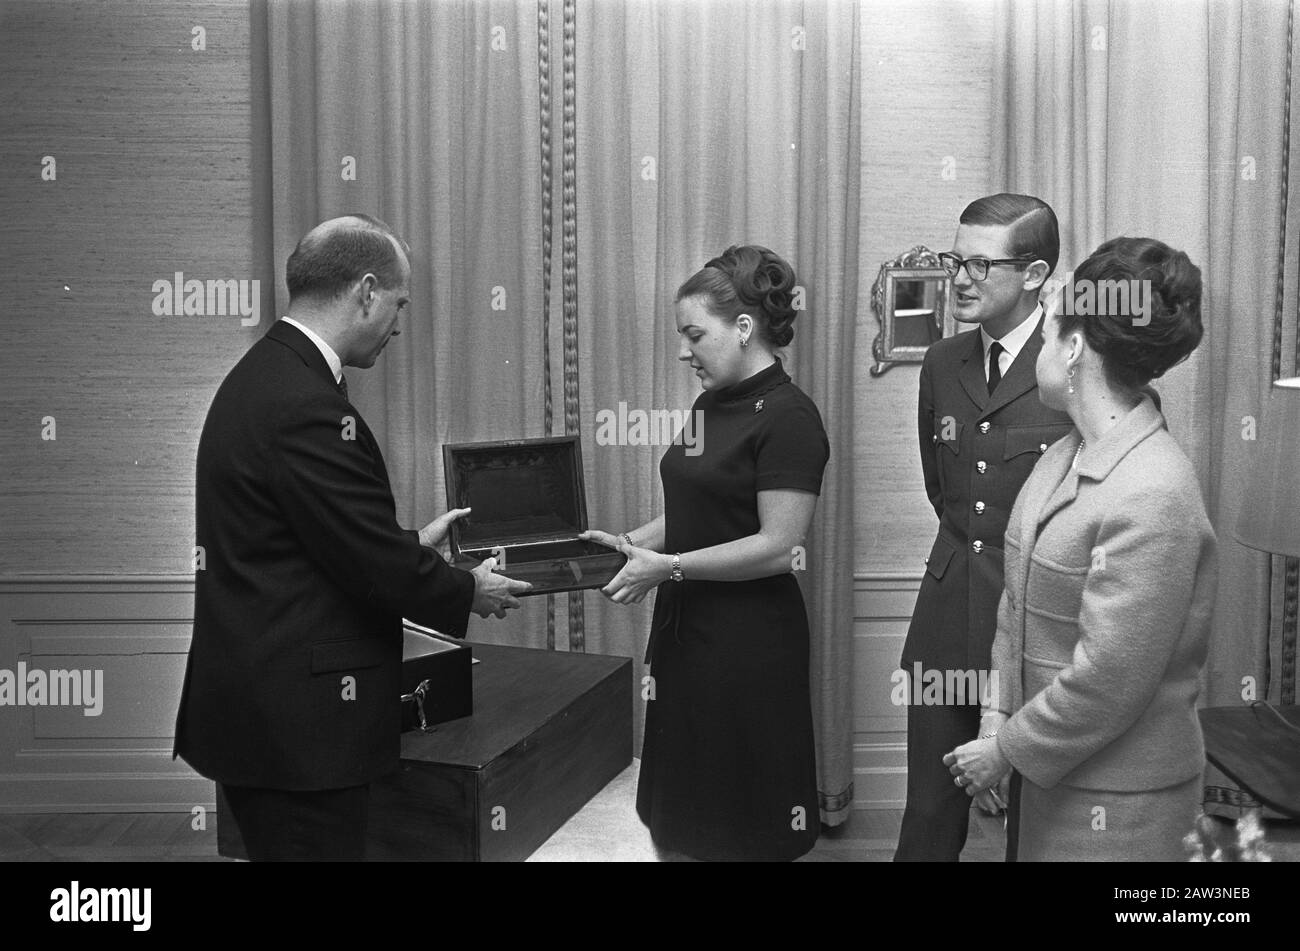 La principessa Margriet e Pieter van Vollenhoven, il Vice Ministro plenipotenziario delle Antille olandesi il Sig. P. L. Karin Jonckheer, figlia del primo ministro delle Antille olandesi, ha ricevuto nel Loo ad Apeldoorn. Durante la reception, la coppia ha ricevuto il regalo di nozze delle Indie Occidentali. Da sinistra a destra: Sig. Hase, Principessa Margriet, sig. Van Vollenhoven, sig... Jonckheer e parte del dono. Data: 11 aprile 1967 Località: Apeldoorn Parole Chiave: Regali, ricevimenti Nome Persona: Haseth, P. H. The, Jonckheer, Karin, Margriet (princess Netherlands), Voll Foto Stock